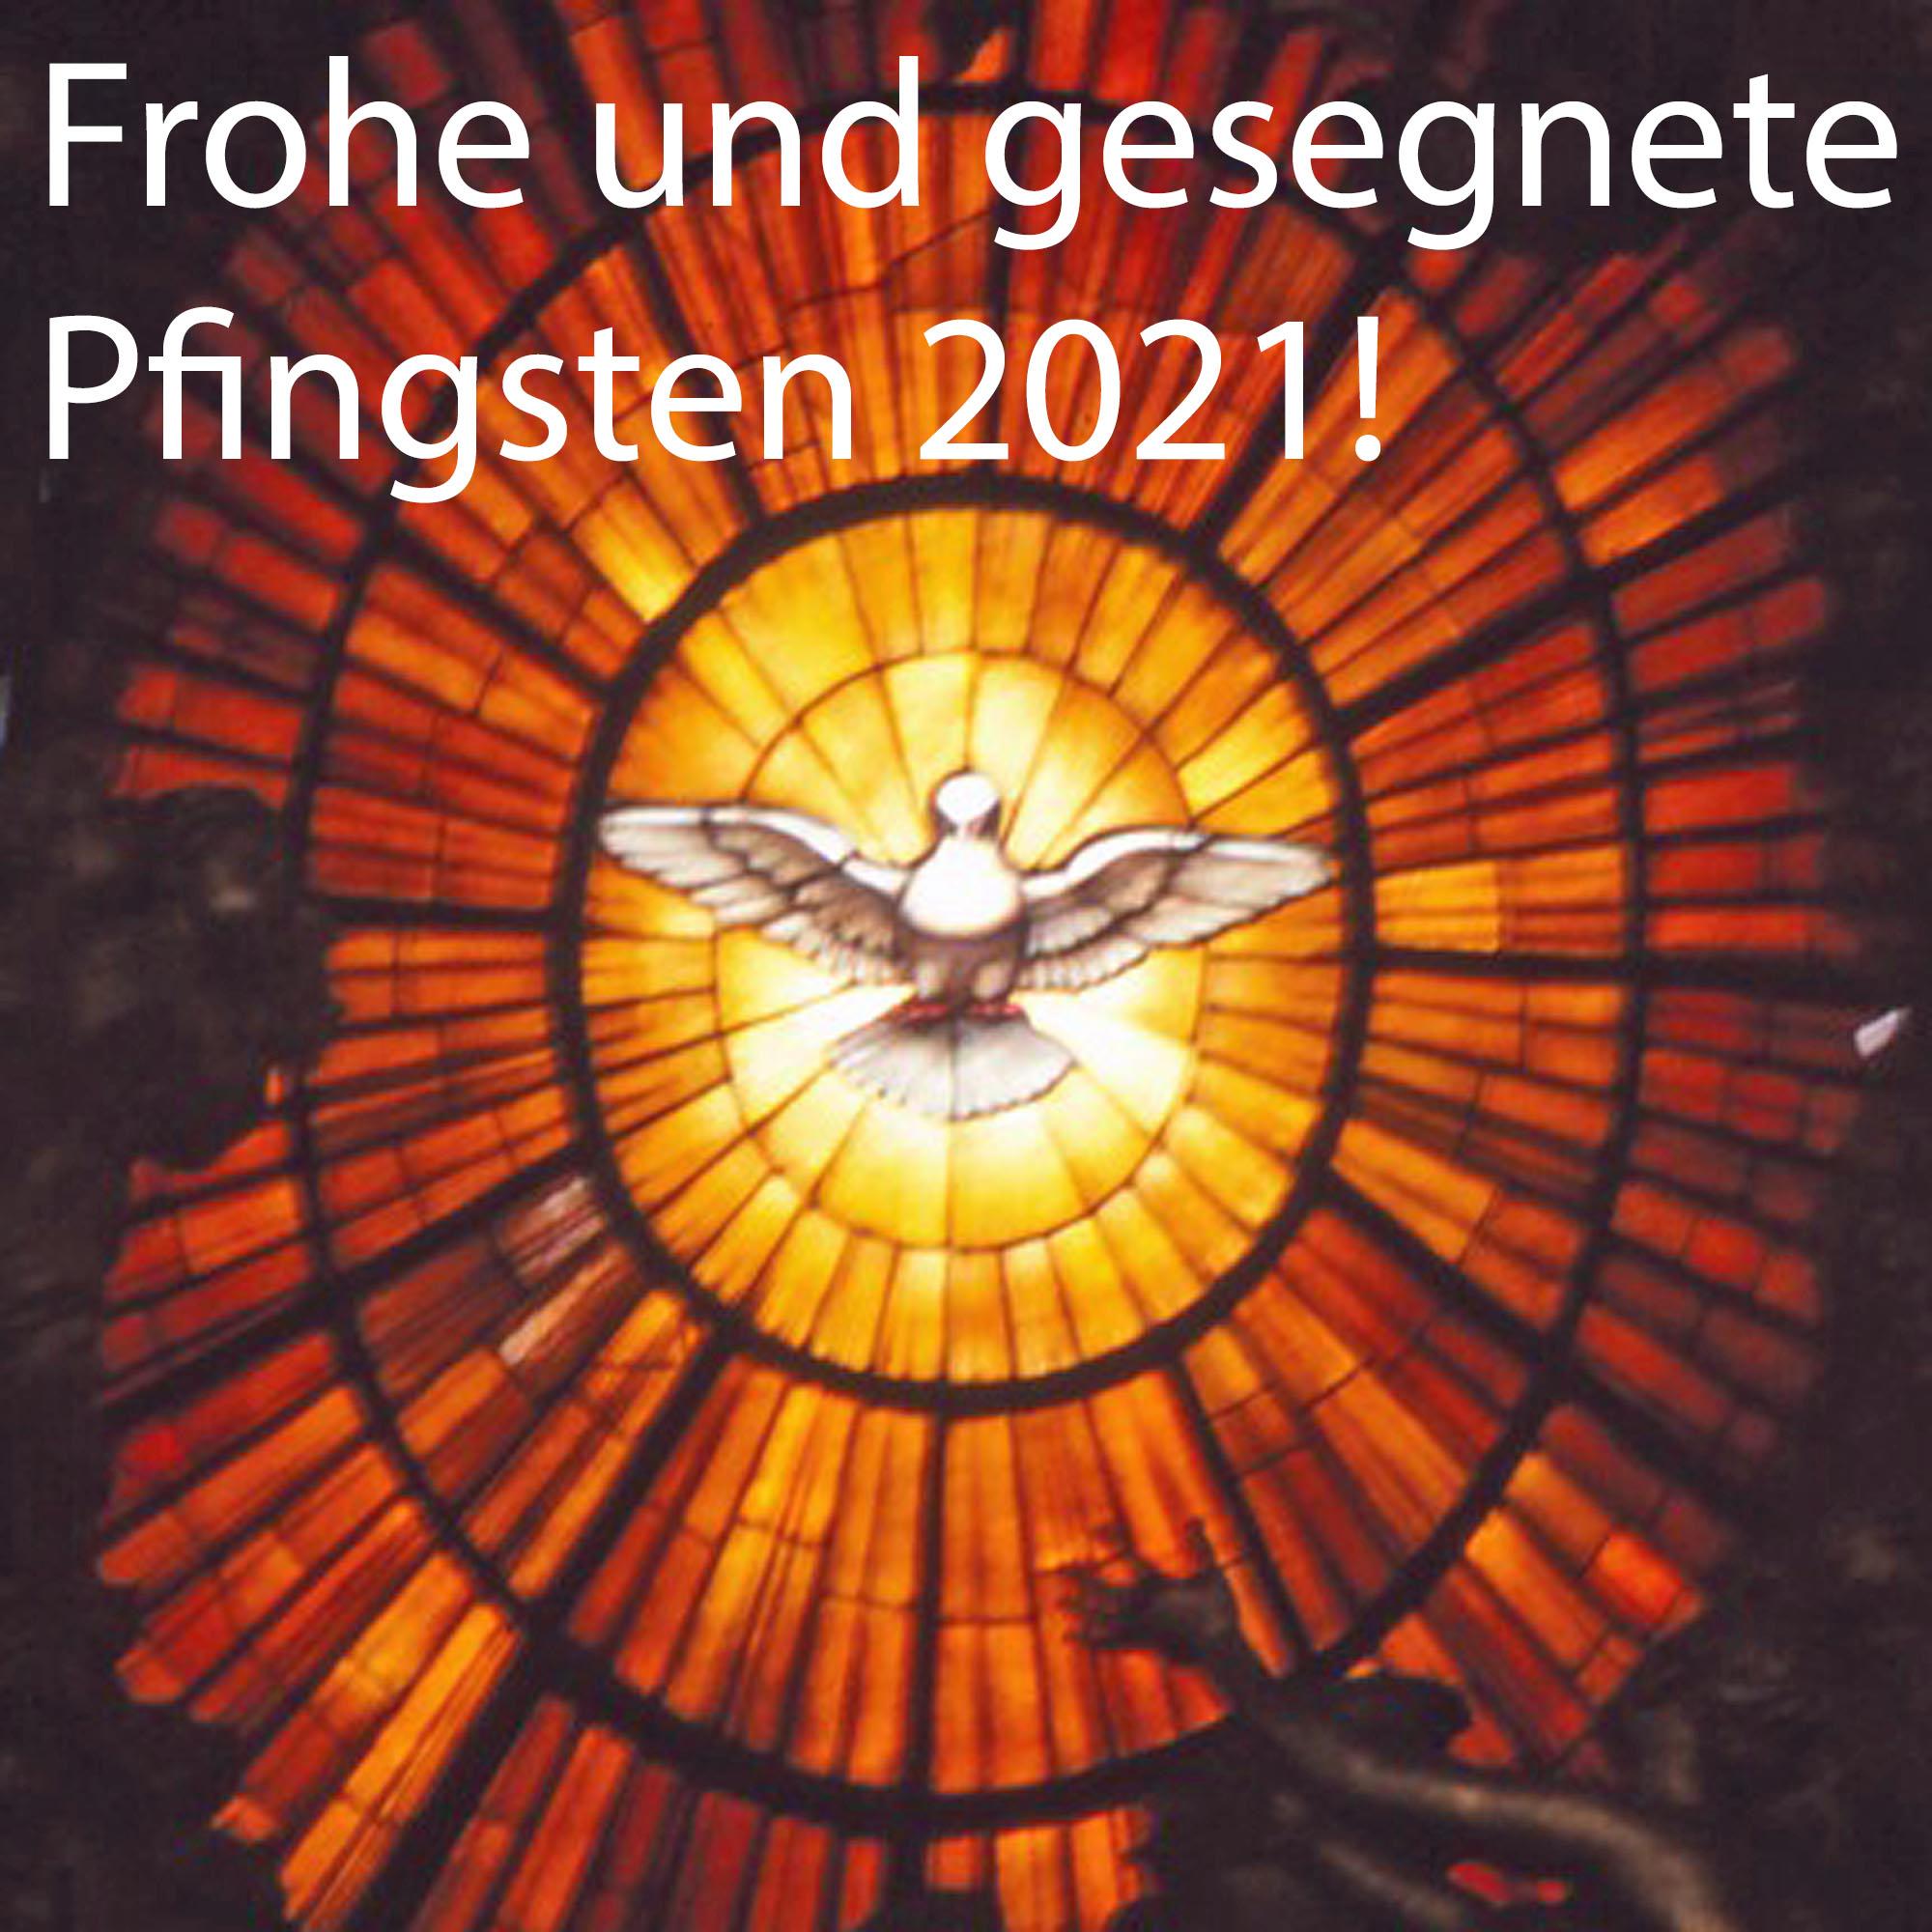 Frohe Pfingsten 2021